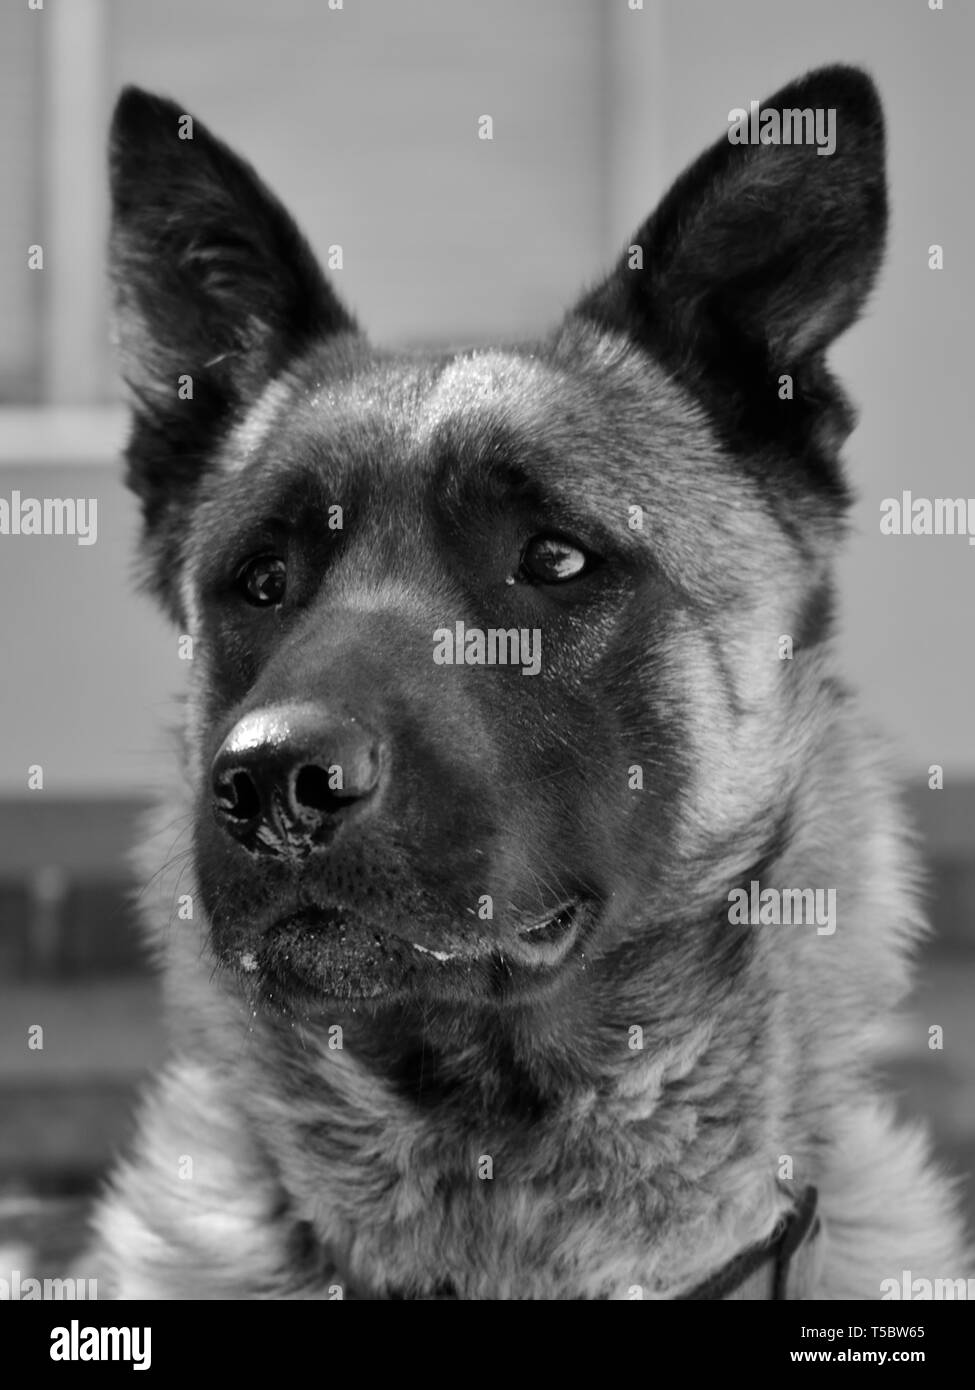 Ritratto monocromo del cane pastore belga malinois, Canis lupus familiaris Foto Stock